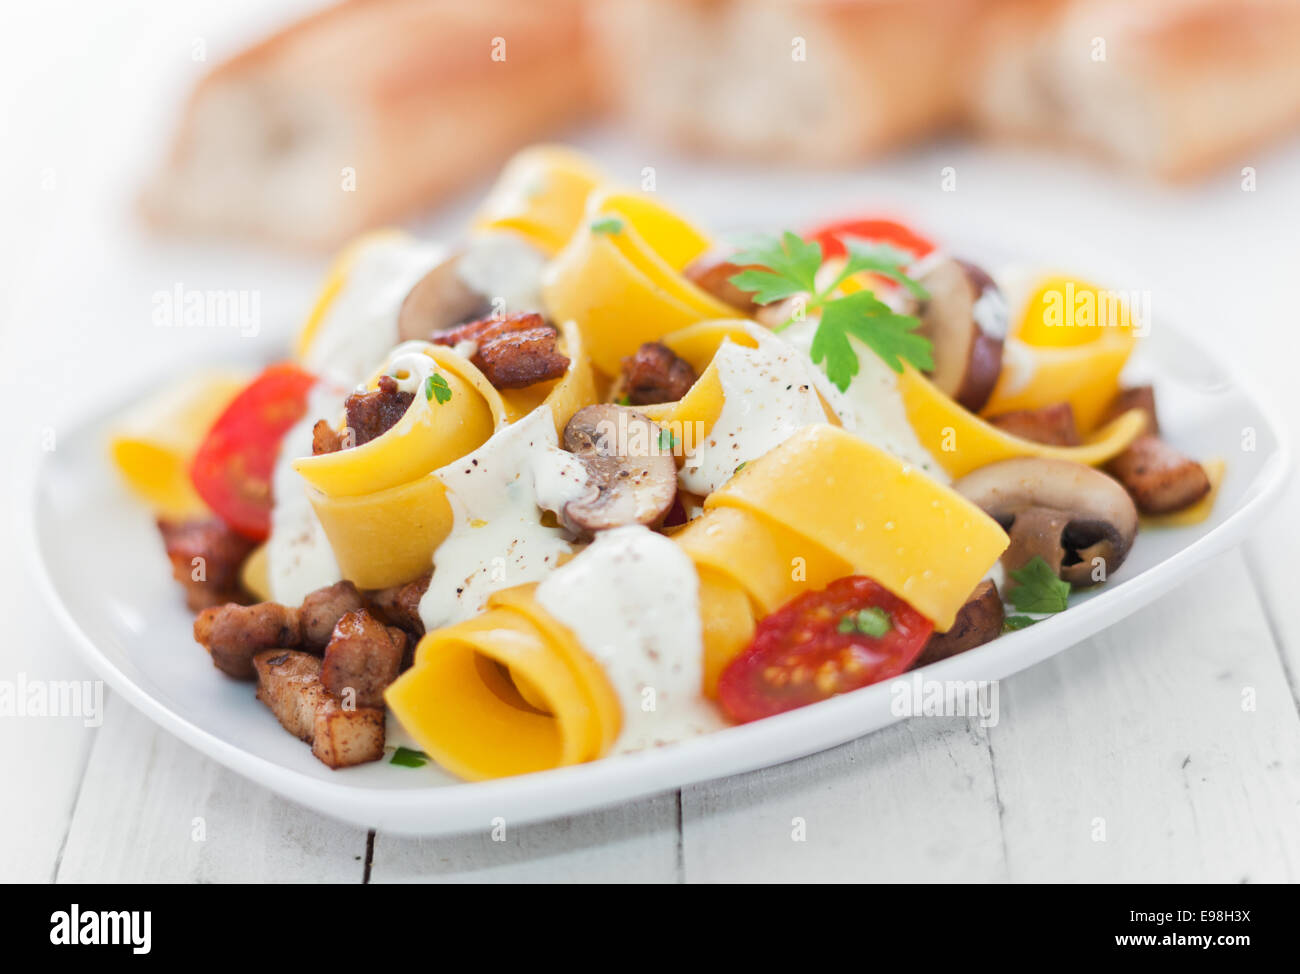 L'Italien de nouilles aux oeufs à la tomate et champignons arrosé d'une sauce à la crème aux herbes aromatiques de délicieuse cuisine italienne Banque D'Images